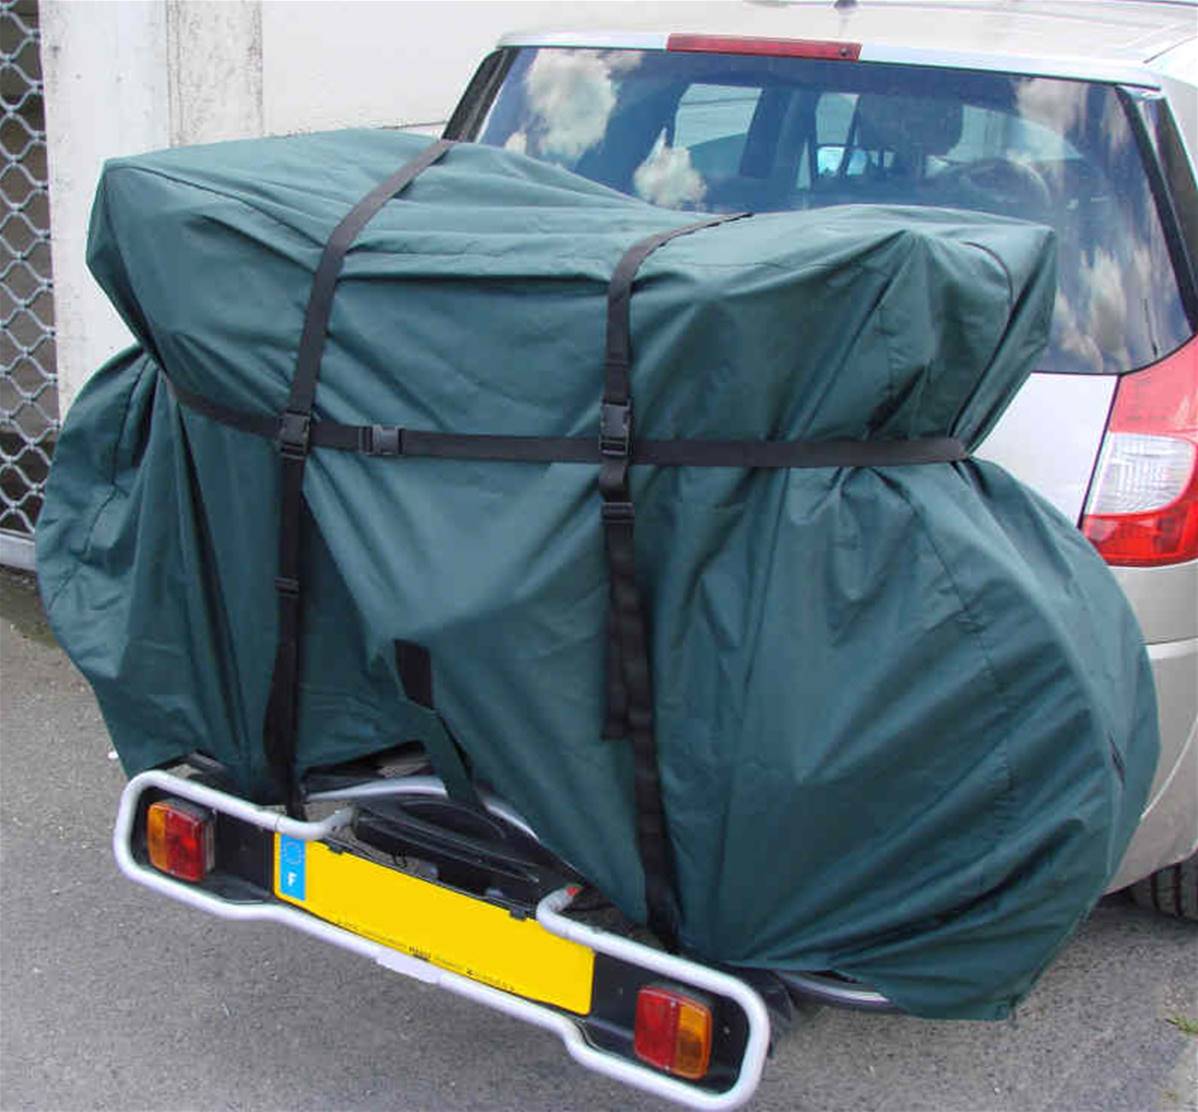 Housse de protection pour porte velo pour camping car (pour 2